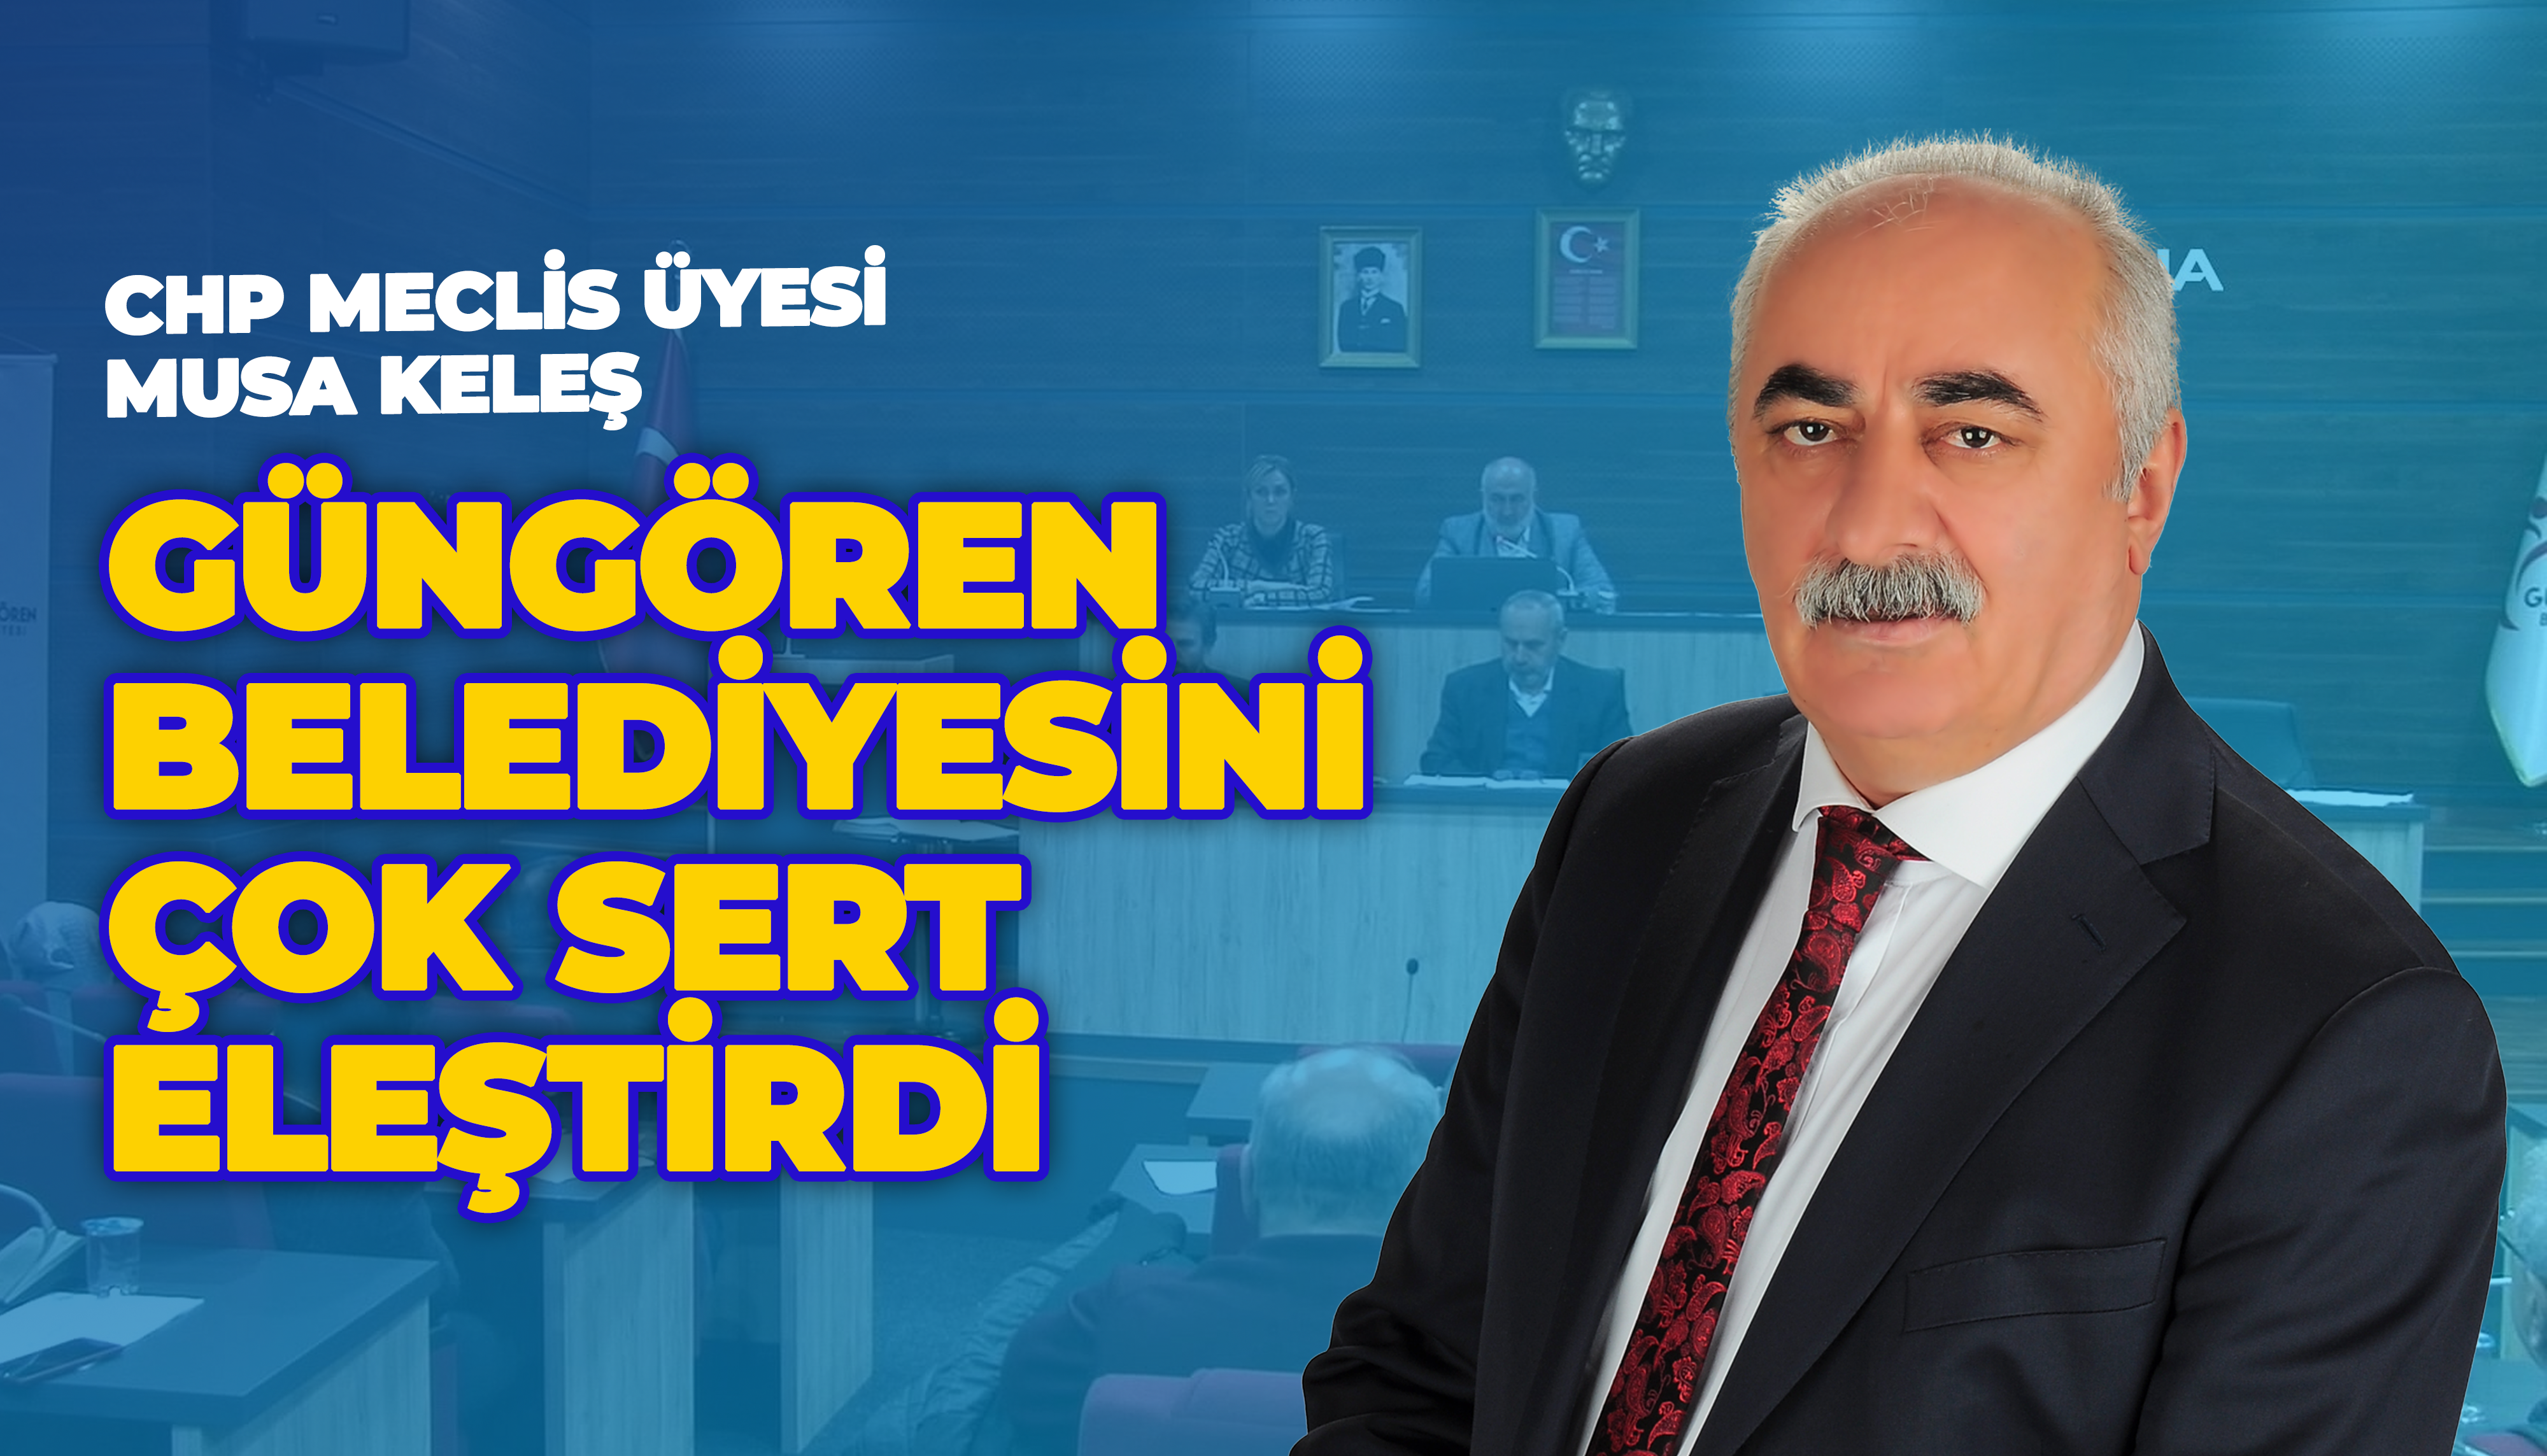 Musa KELEŞ, mecliste belediye yönetimine sert çıktı: Her şeyin hesabını vereceksiniz.